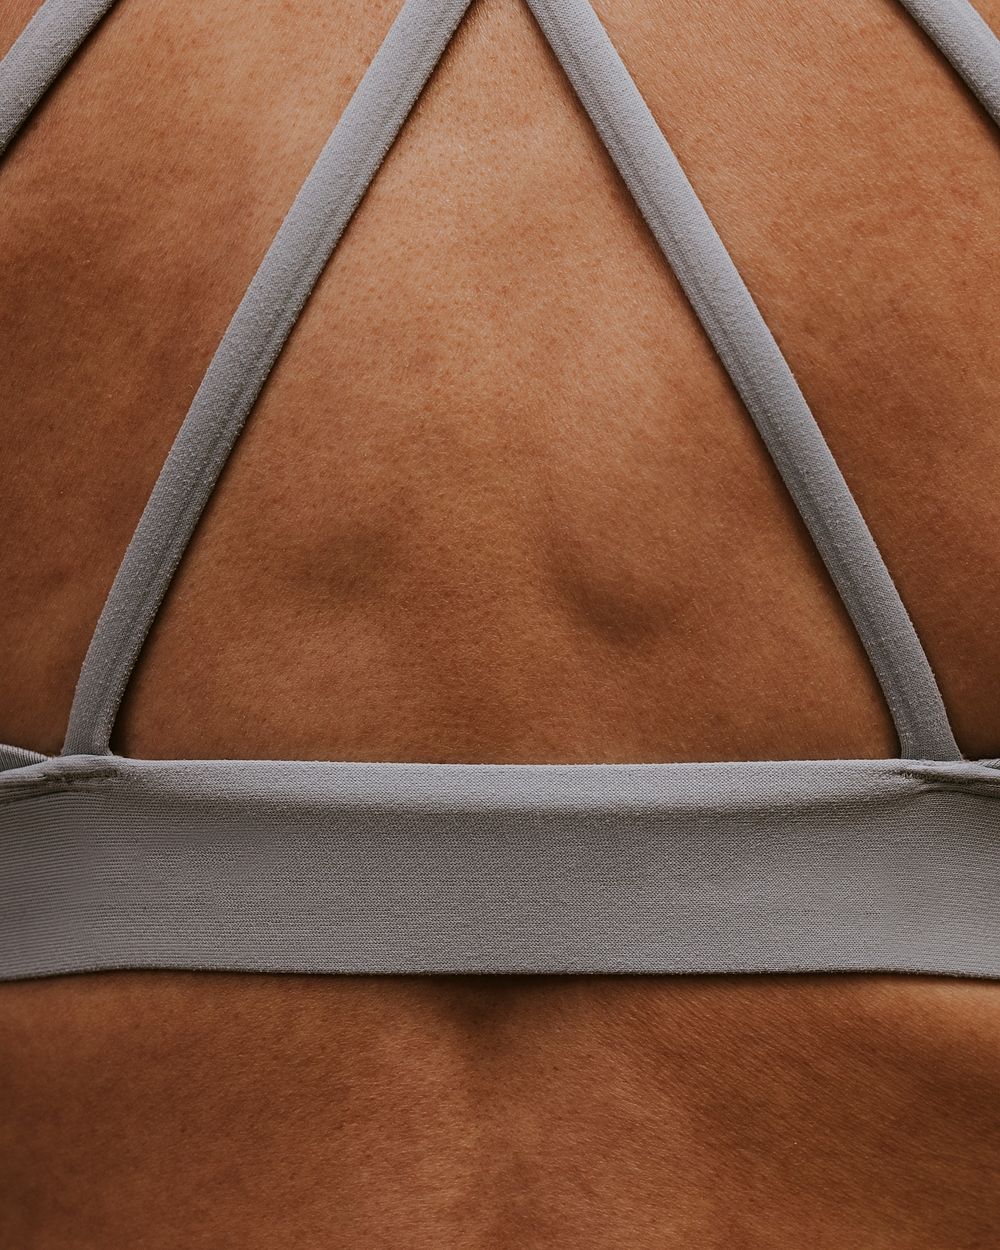 Woman wearing sports bra, closeup rear view photo